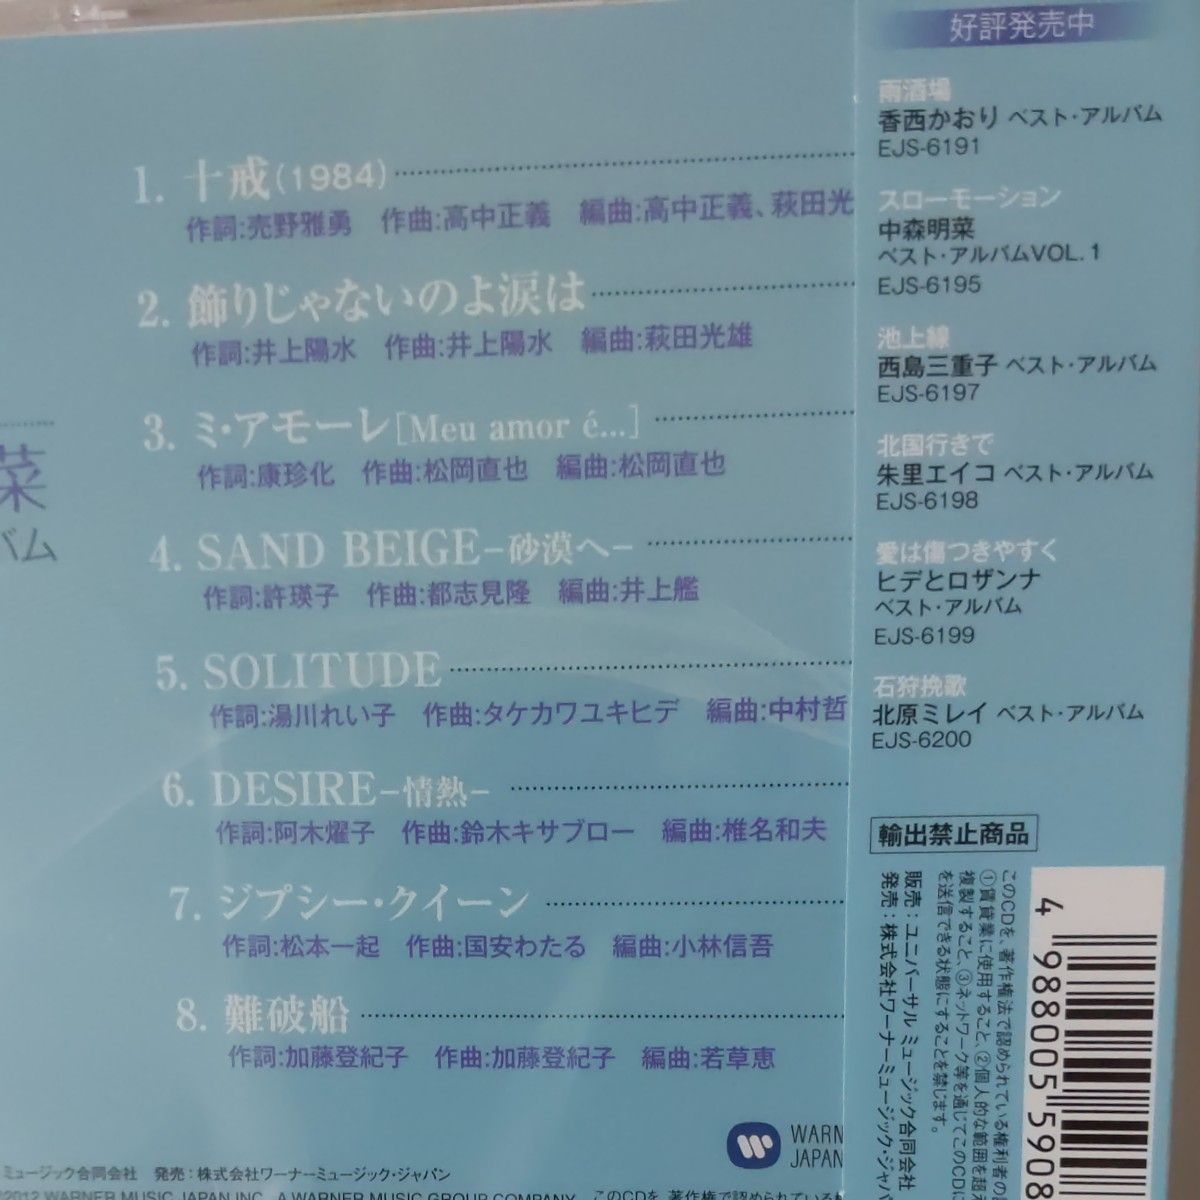  CD 中森明菜 スローモーション ベストアルバム VOL.1 VOL2            ２枚組           